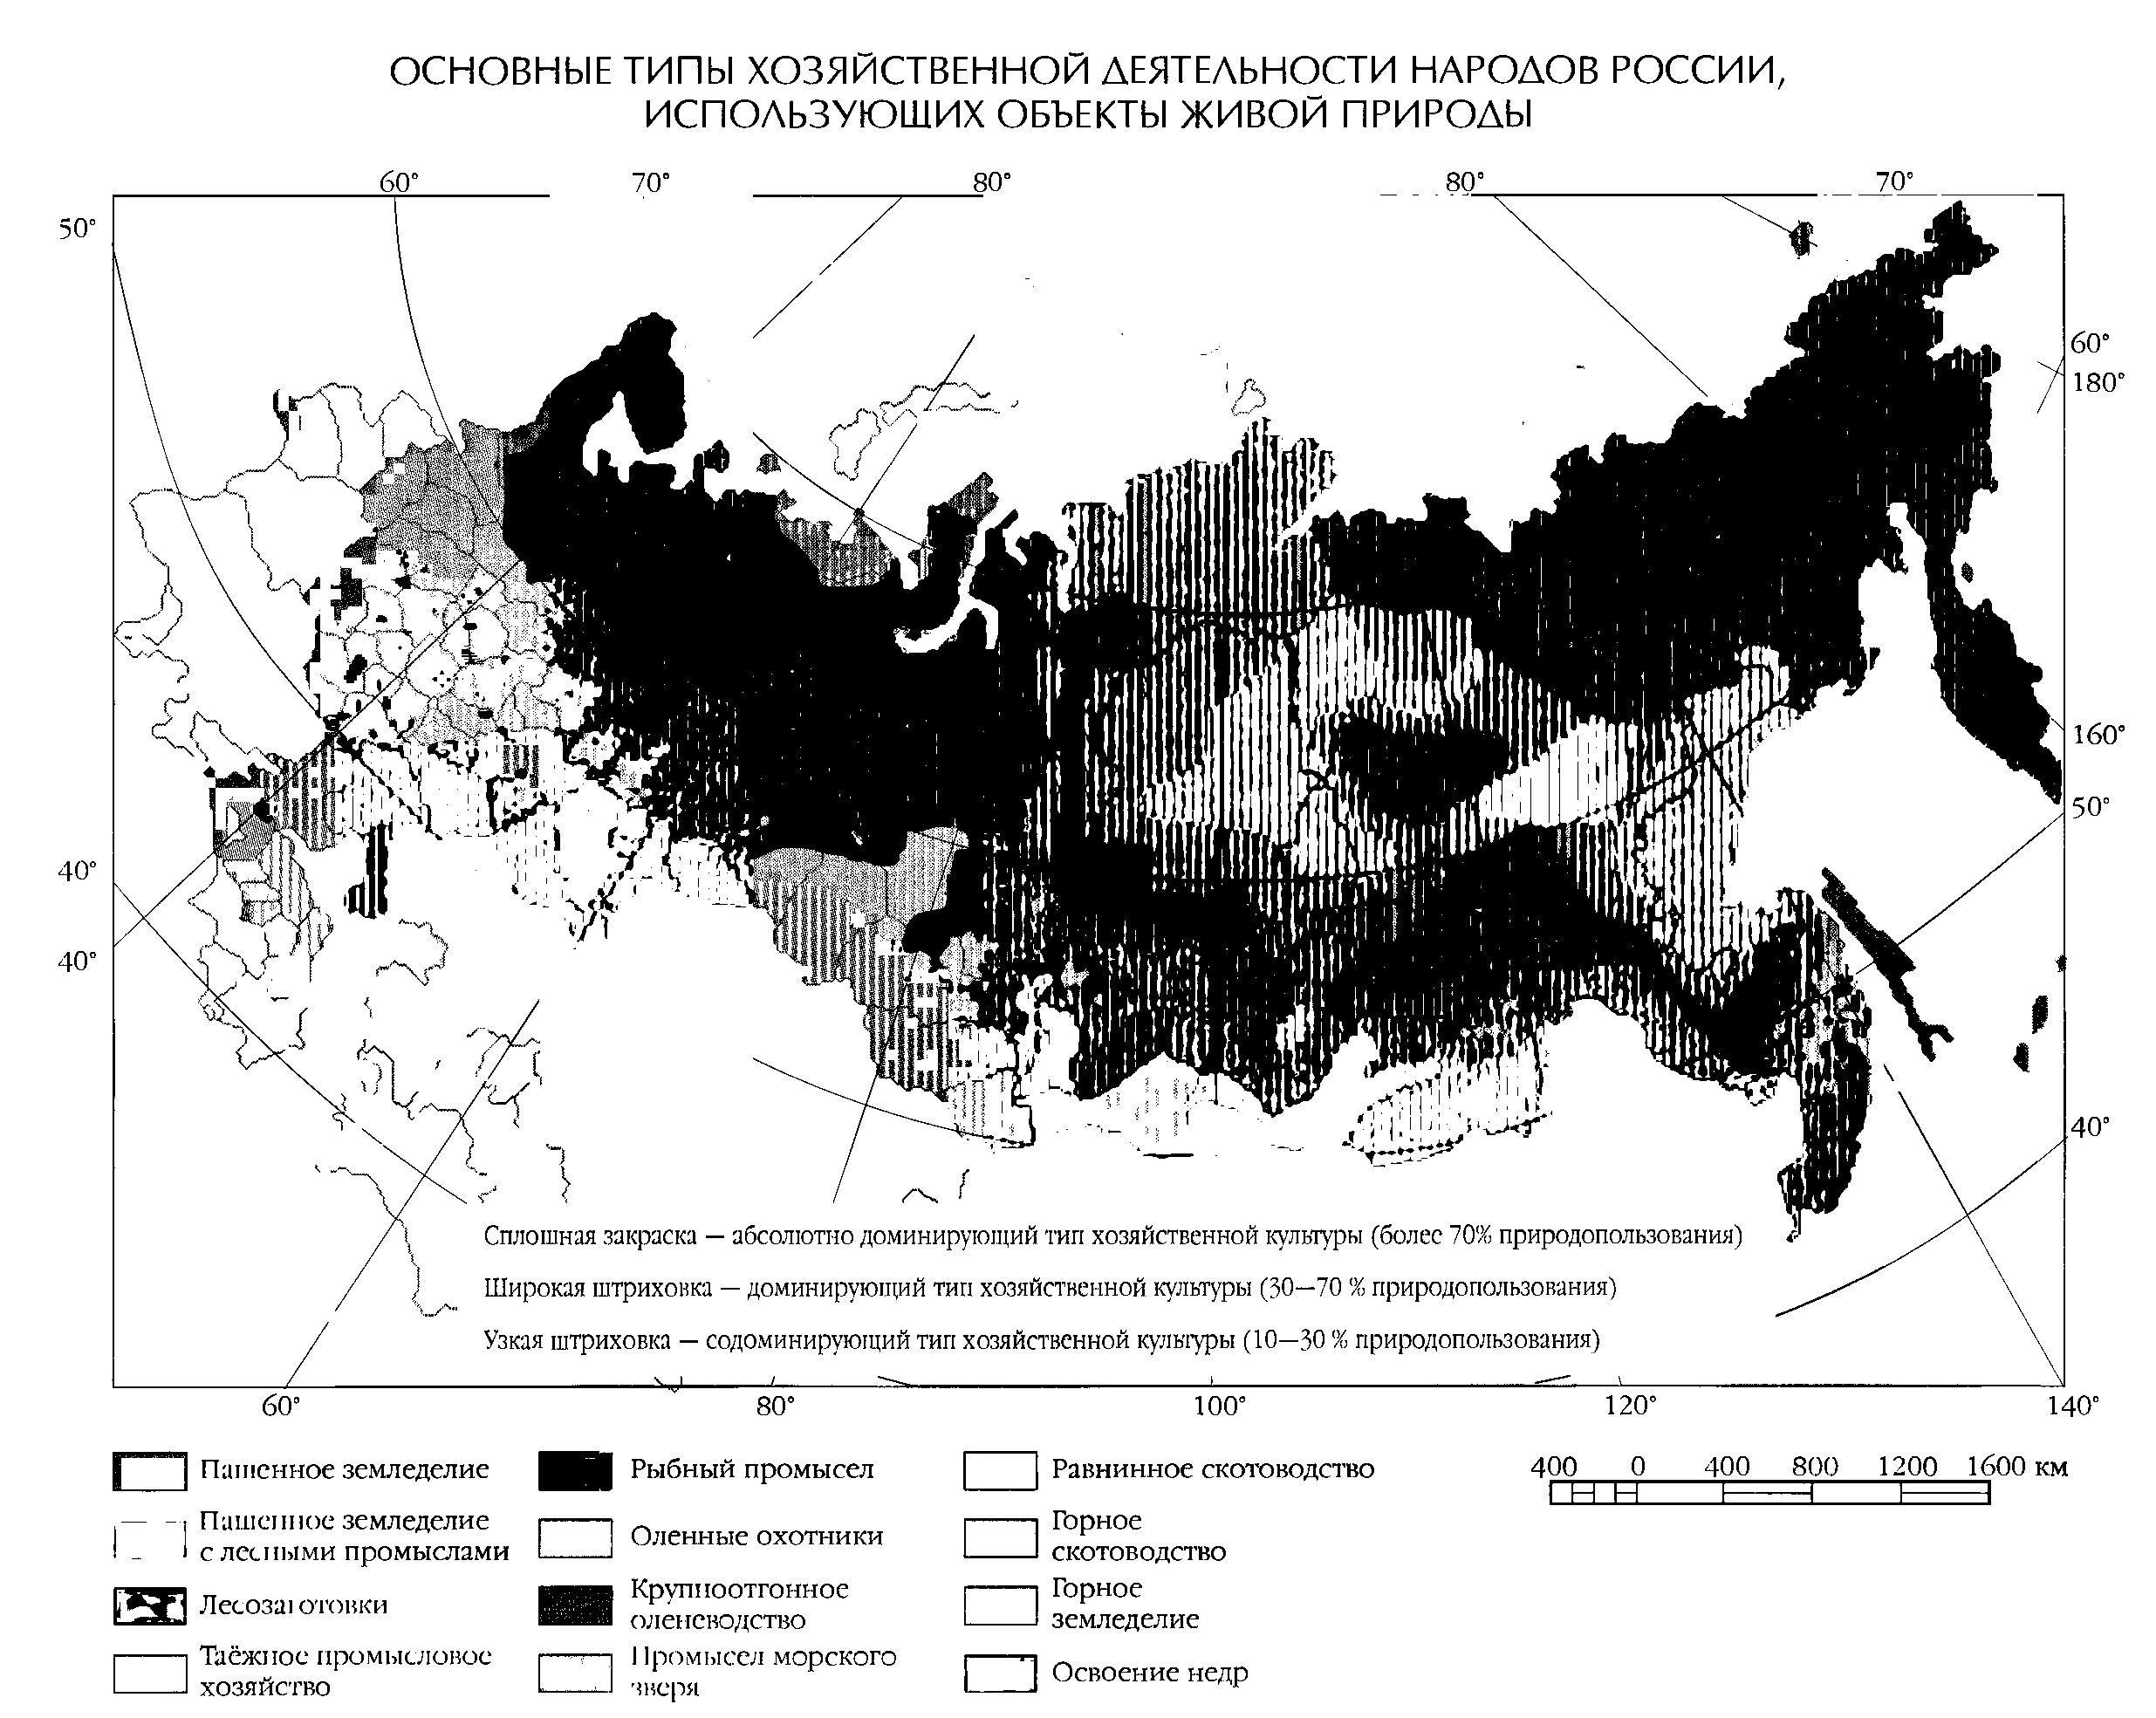 основные типы хозяйственной деятельности народов россии, использующих объекты живой природы